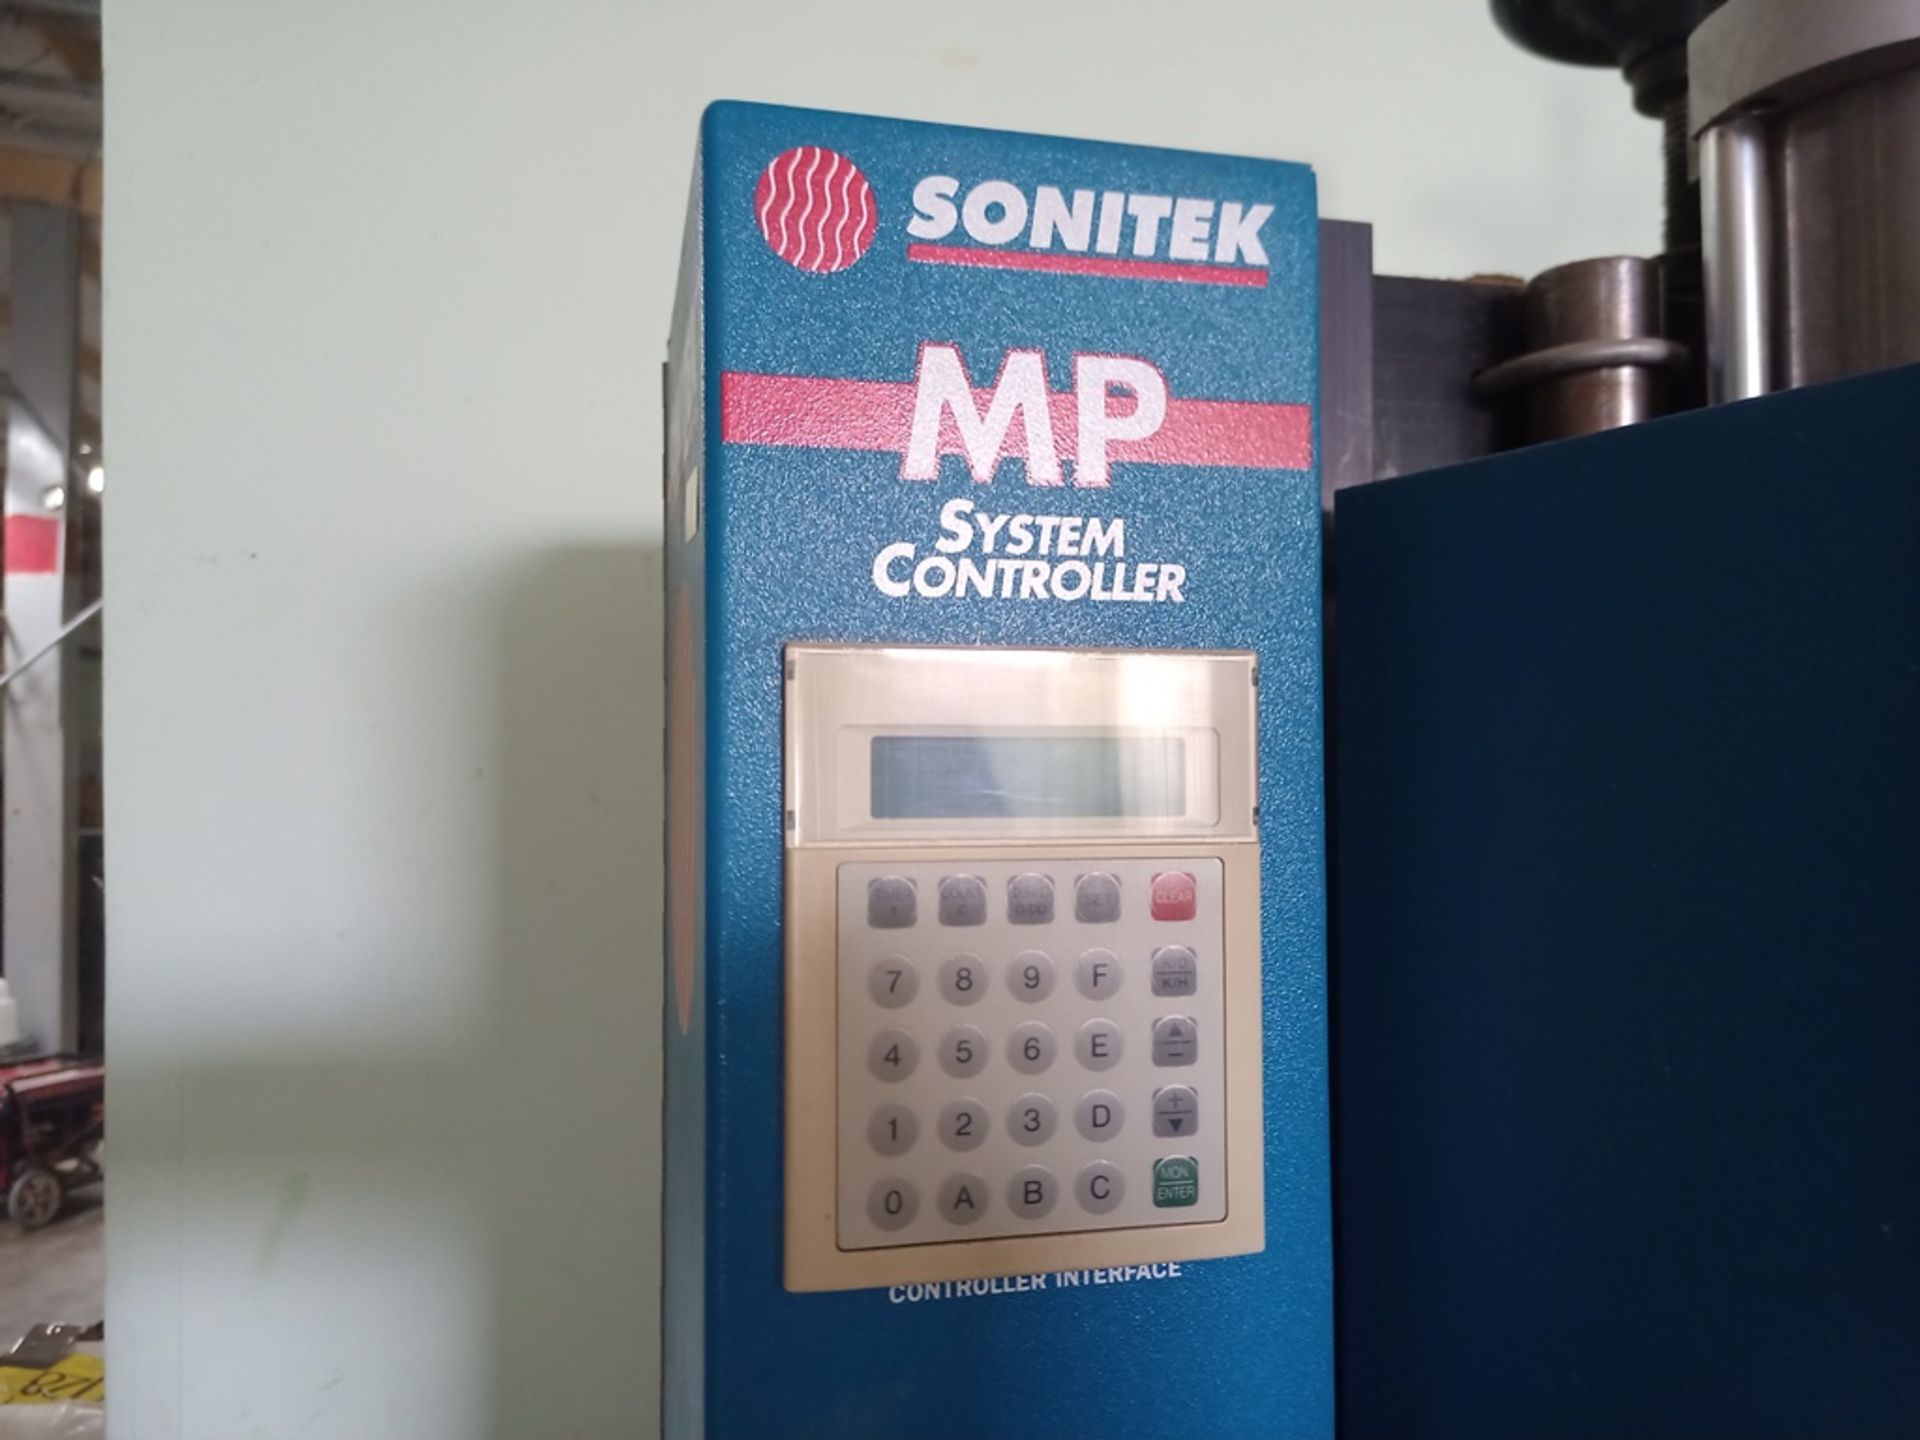 Sonitek heat press, Model MP572/1, includes pneumatic press of 1/4 de ton - Image 13 of 17